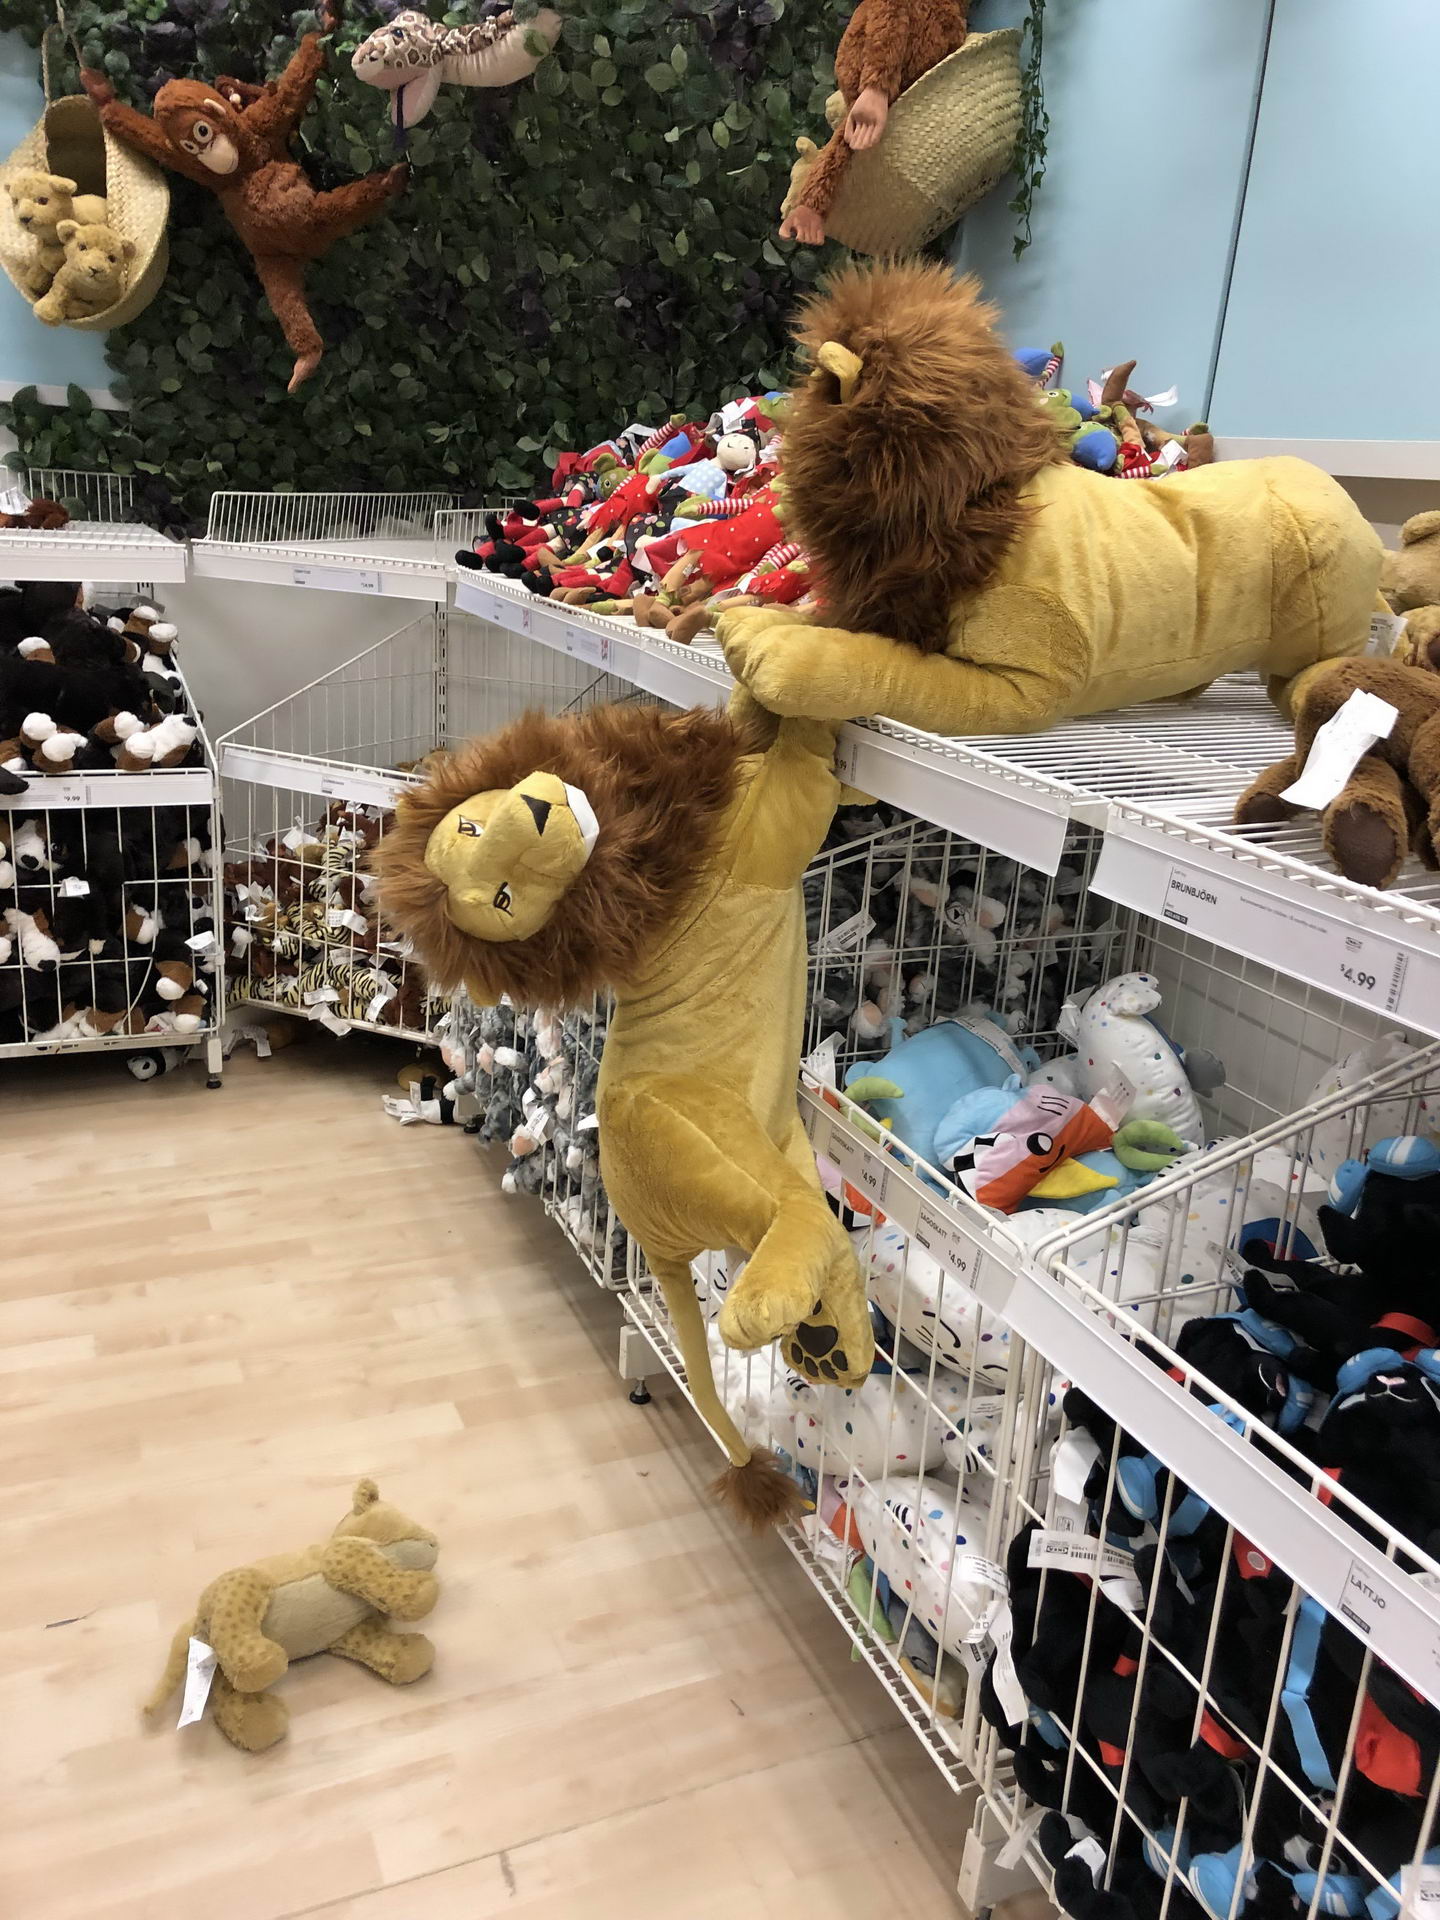 ikea lion king scene